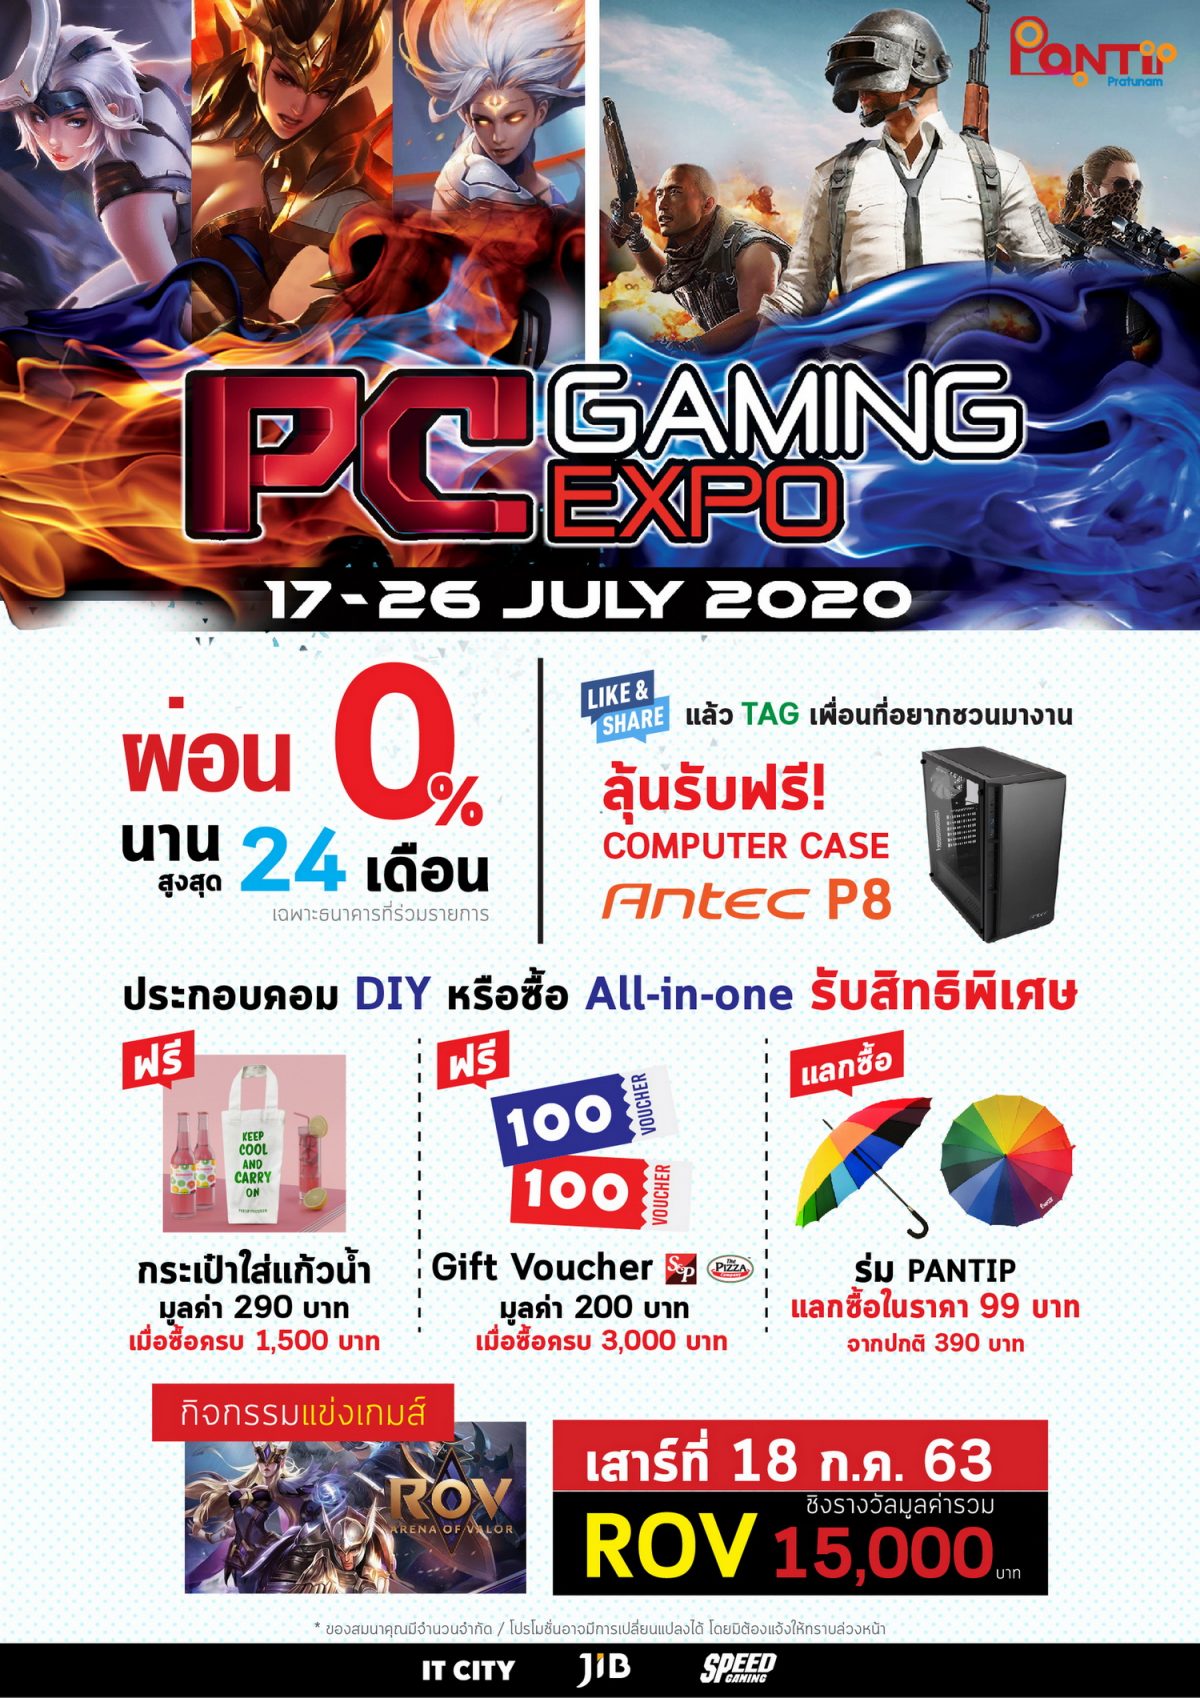 17 - 26 ก.ค. นี้ ชาวเกมเมอร์ห้ามพลาดงาน PC GAMING EXPO 2020 ที่พันธุ์ทิพย์ ประตูน้ำ รวมอุปกรณ์เกมโดนๆ ไว้เพียบ พร้อมโปรผ่อนนานสูงสุด 24